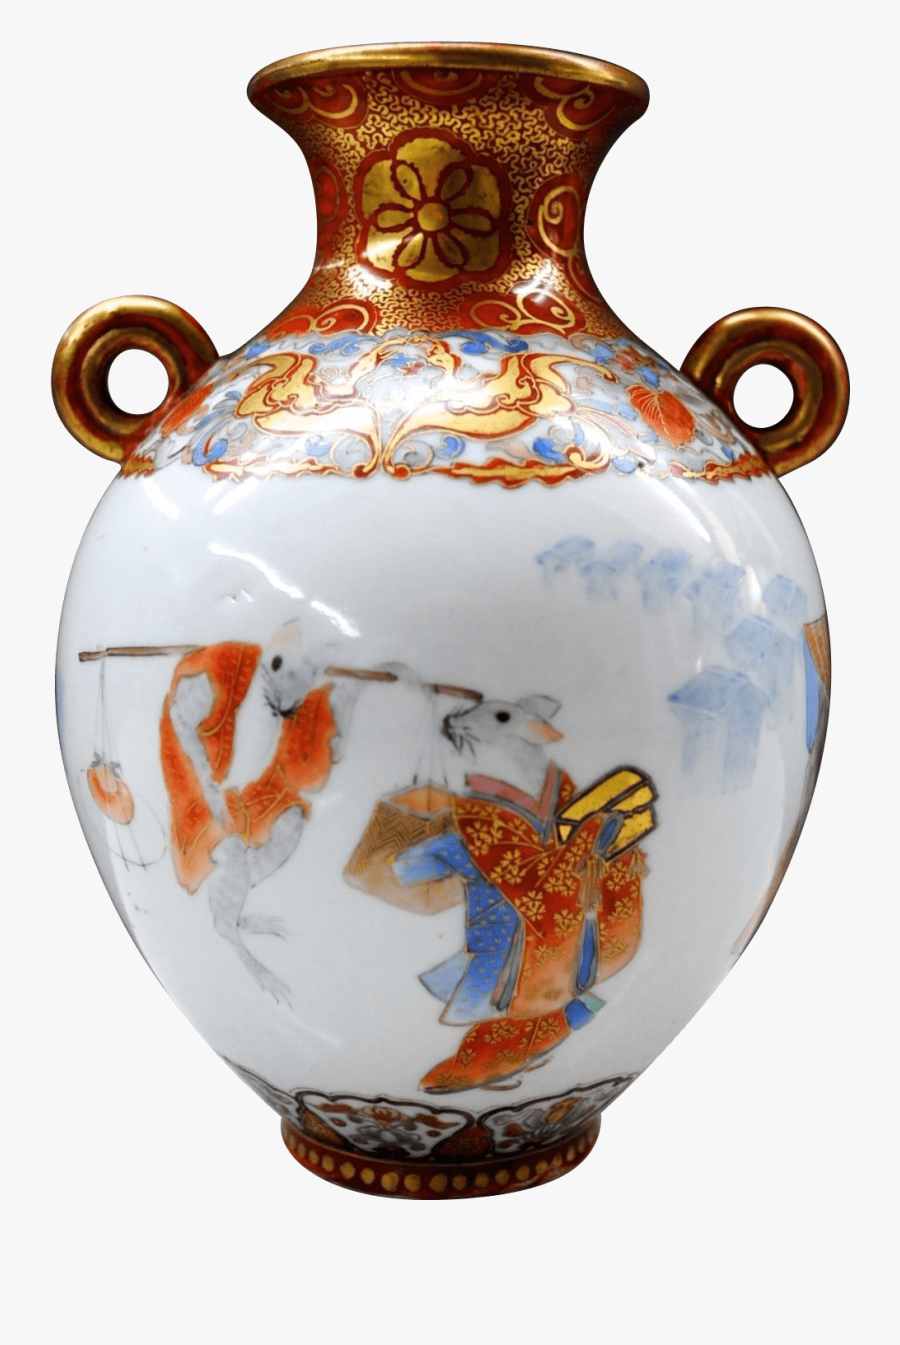 Antique Kutani Porcelain Vase - Porcelain Vase Clipart, Transparent Clipart